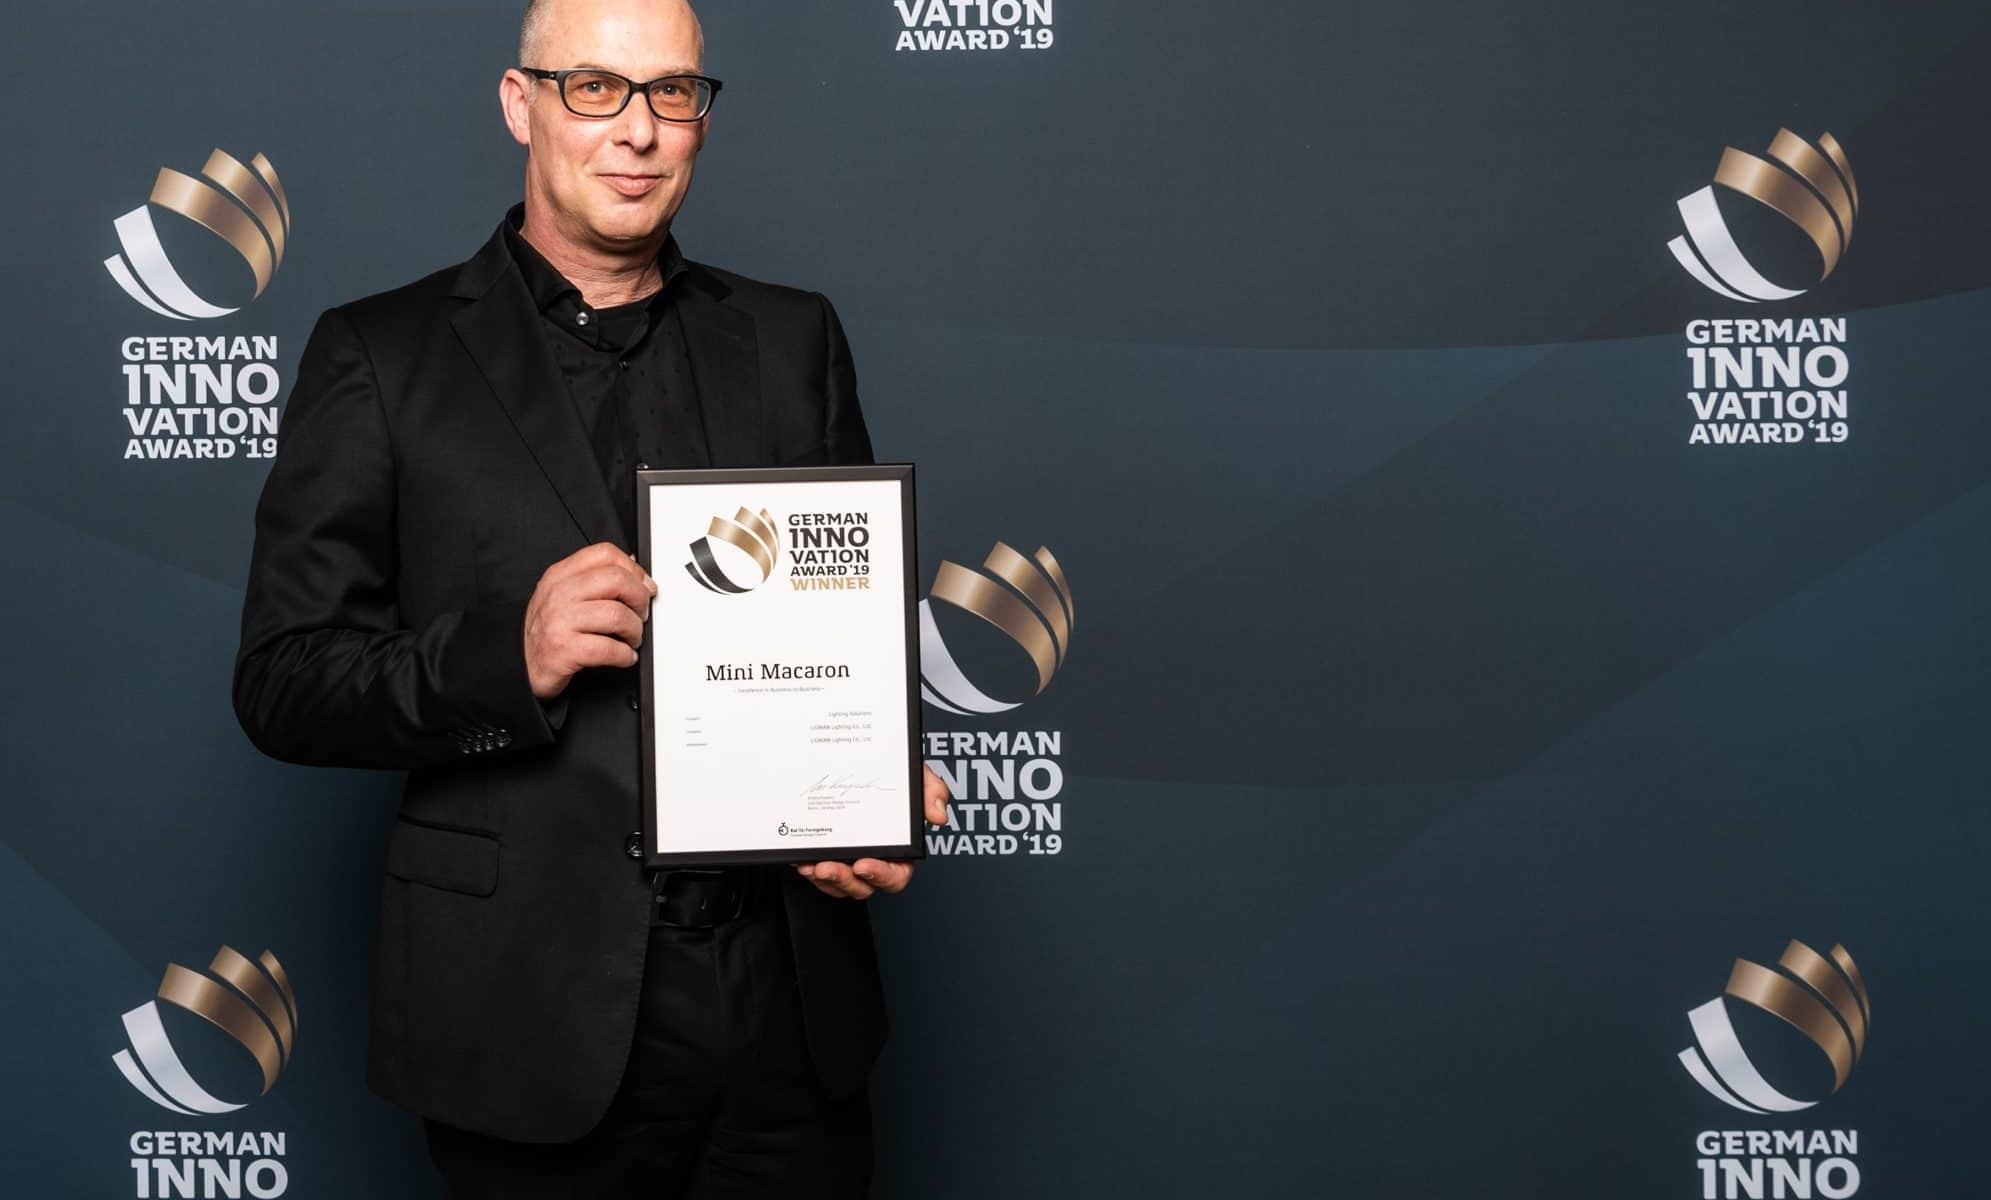 GERMAN INNO VATION Award 2019